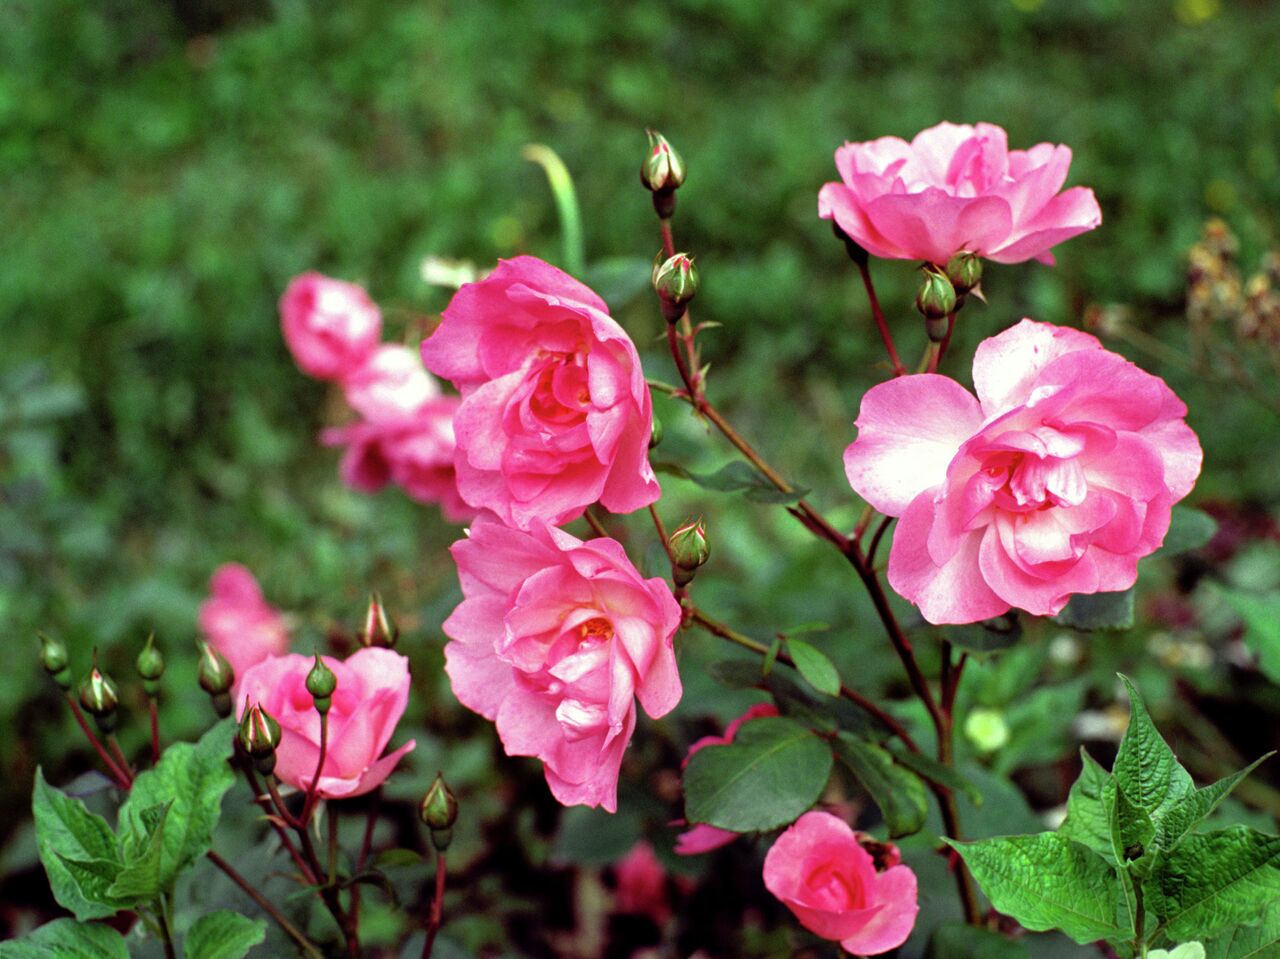 Особенности посадки роз весной в открытый грунт